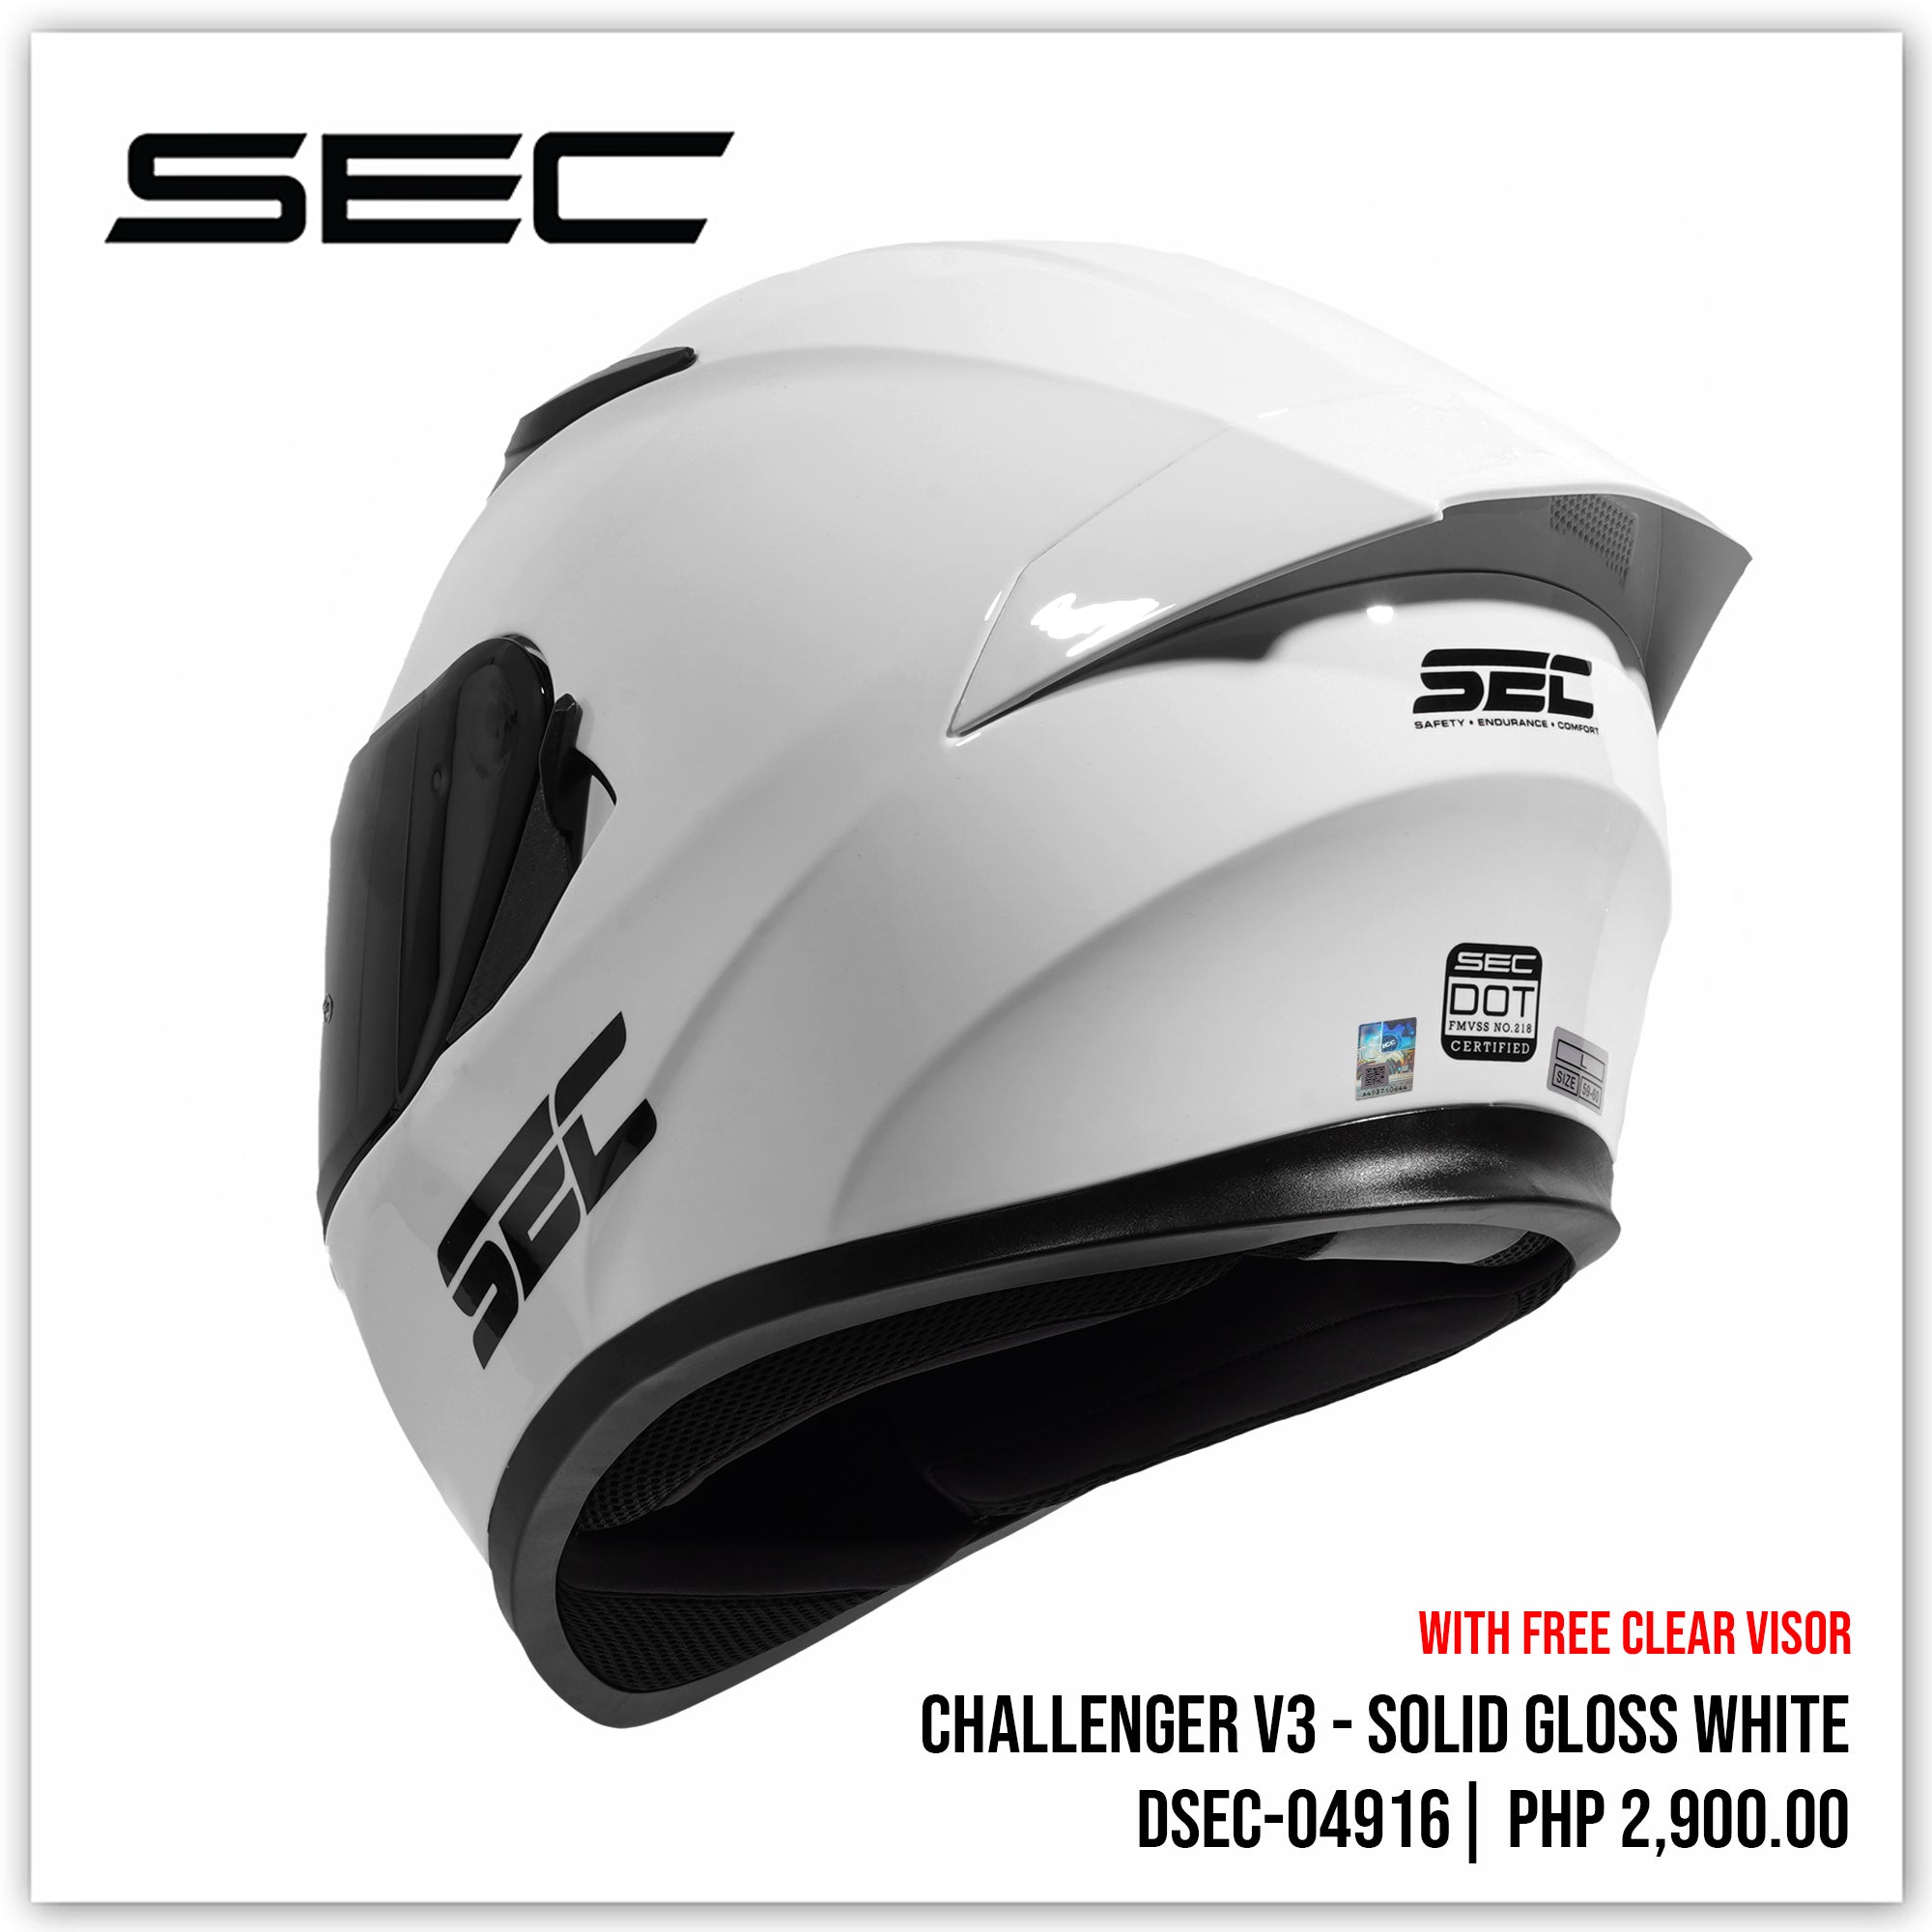 Challenger v3 - Solid Gloss White